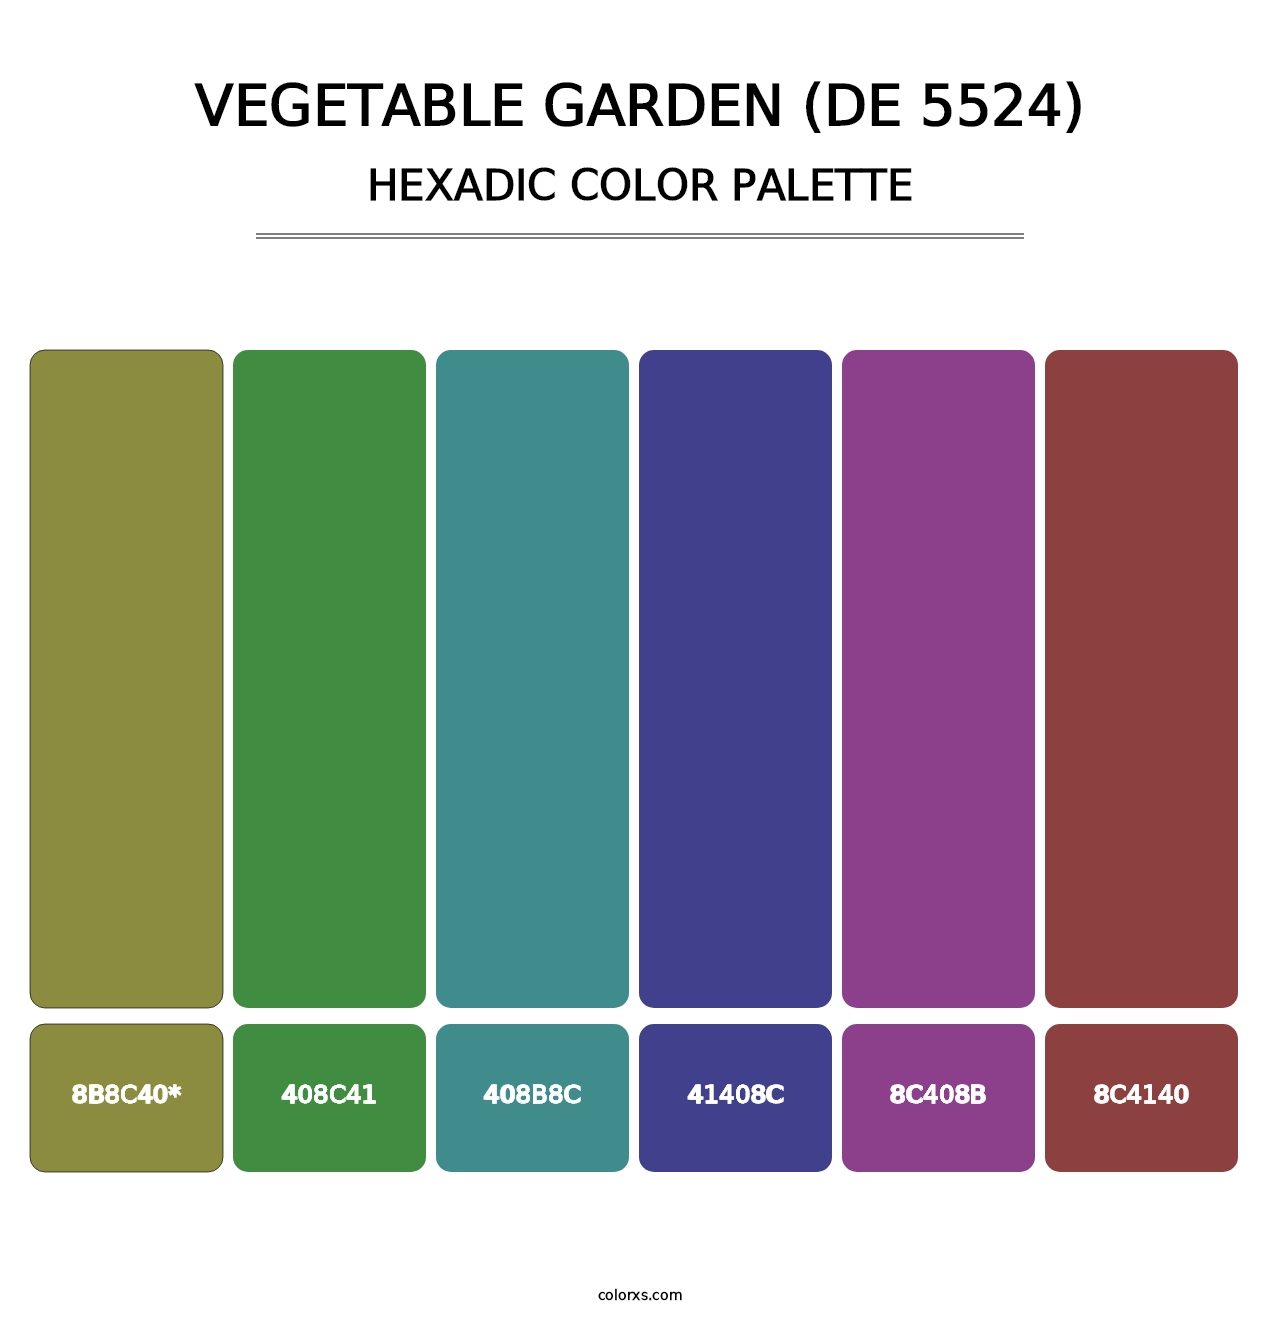 Vegetable Garden (DE 5524) - Hexadic Color Palette